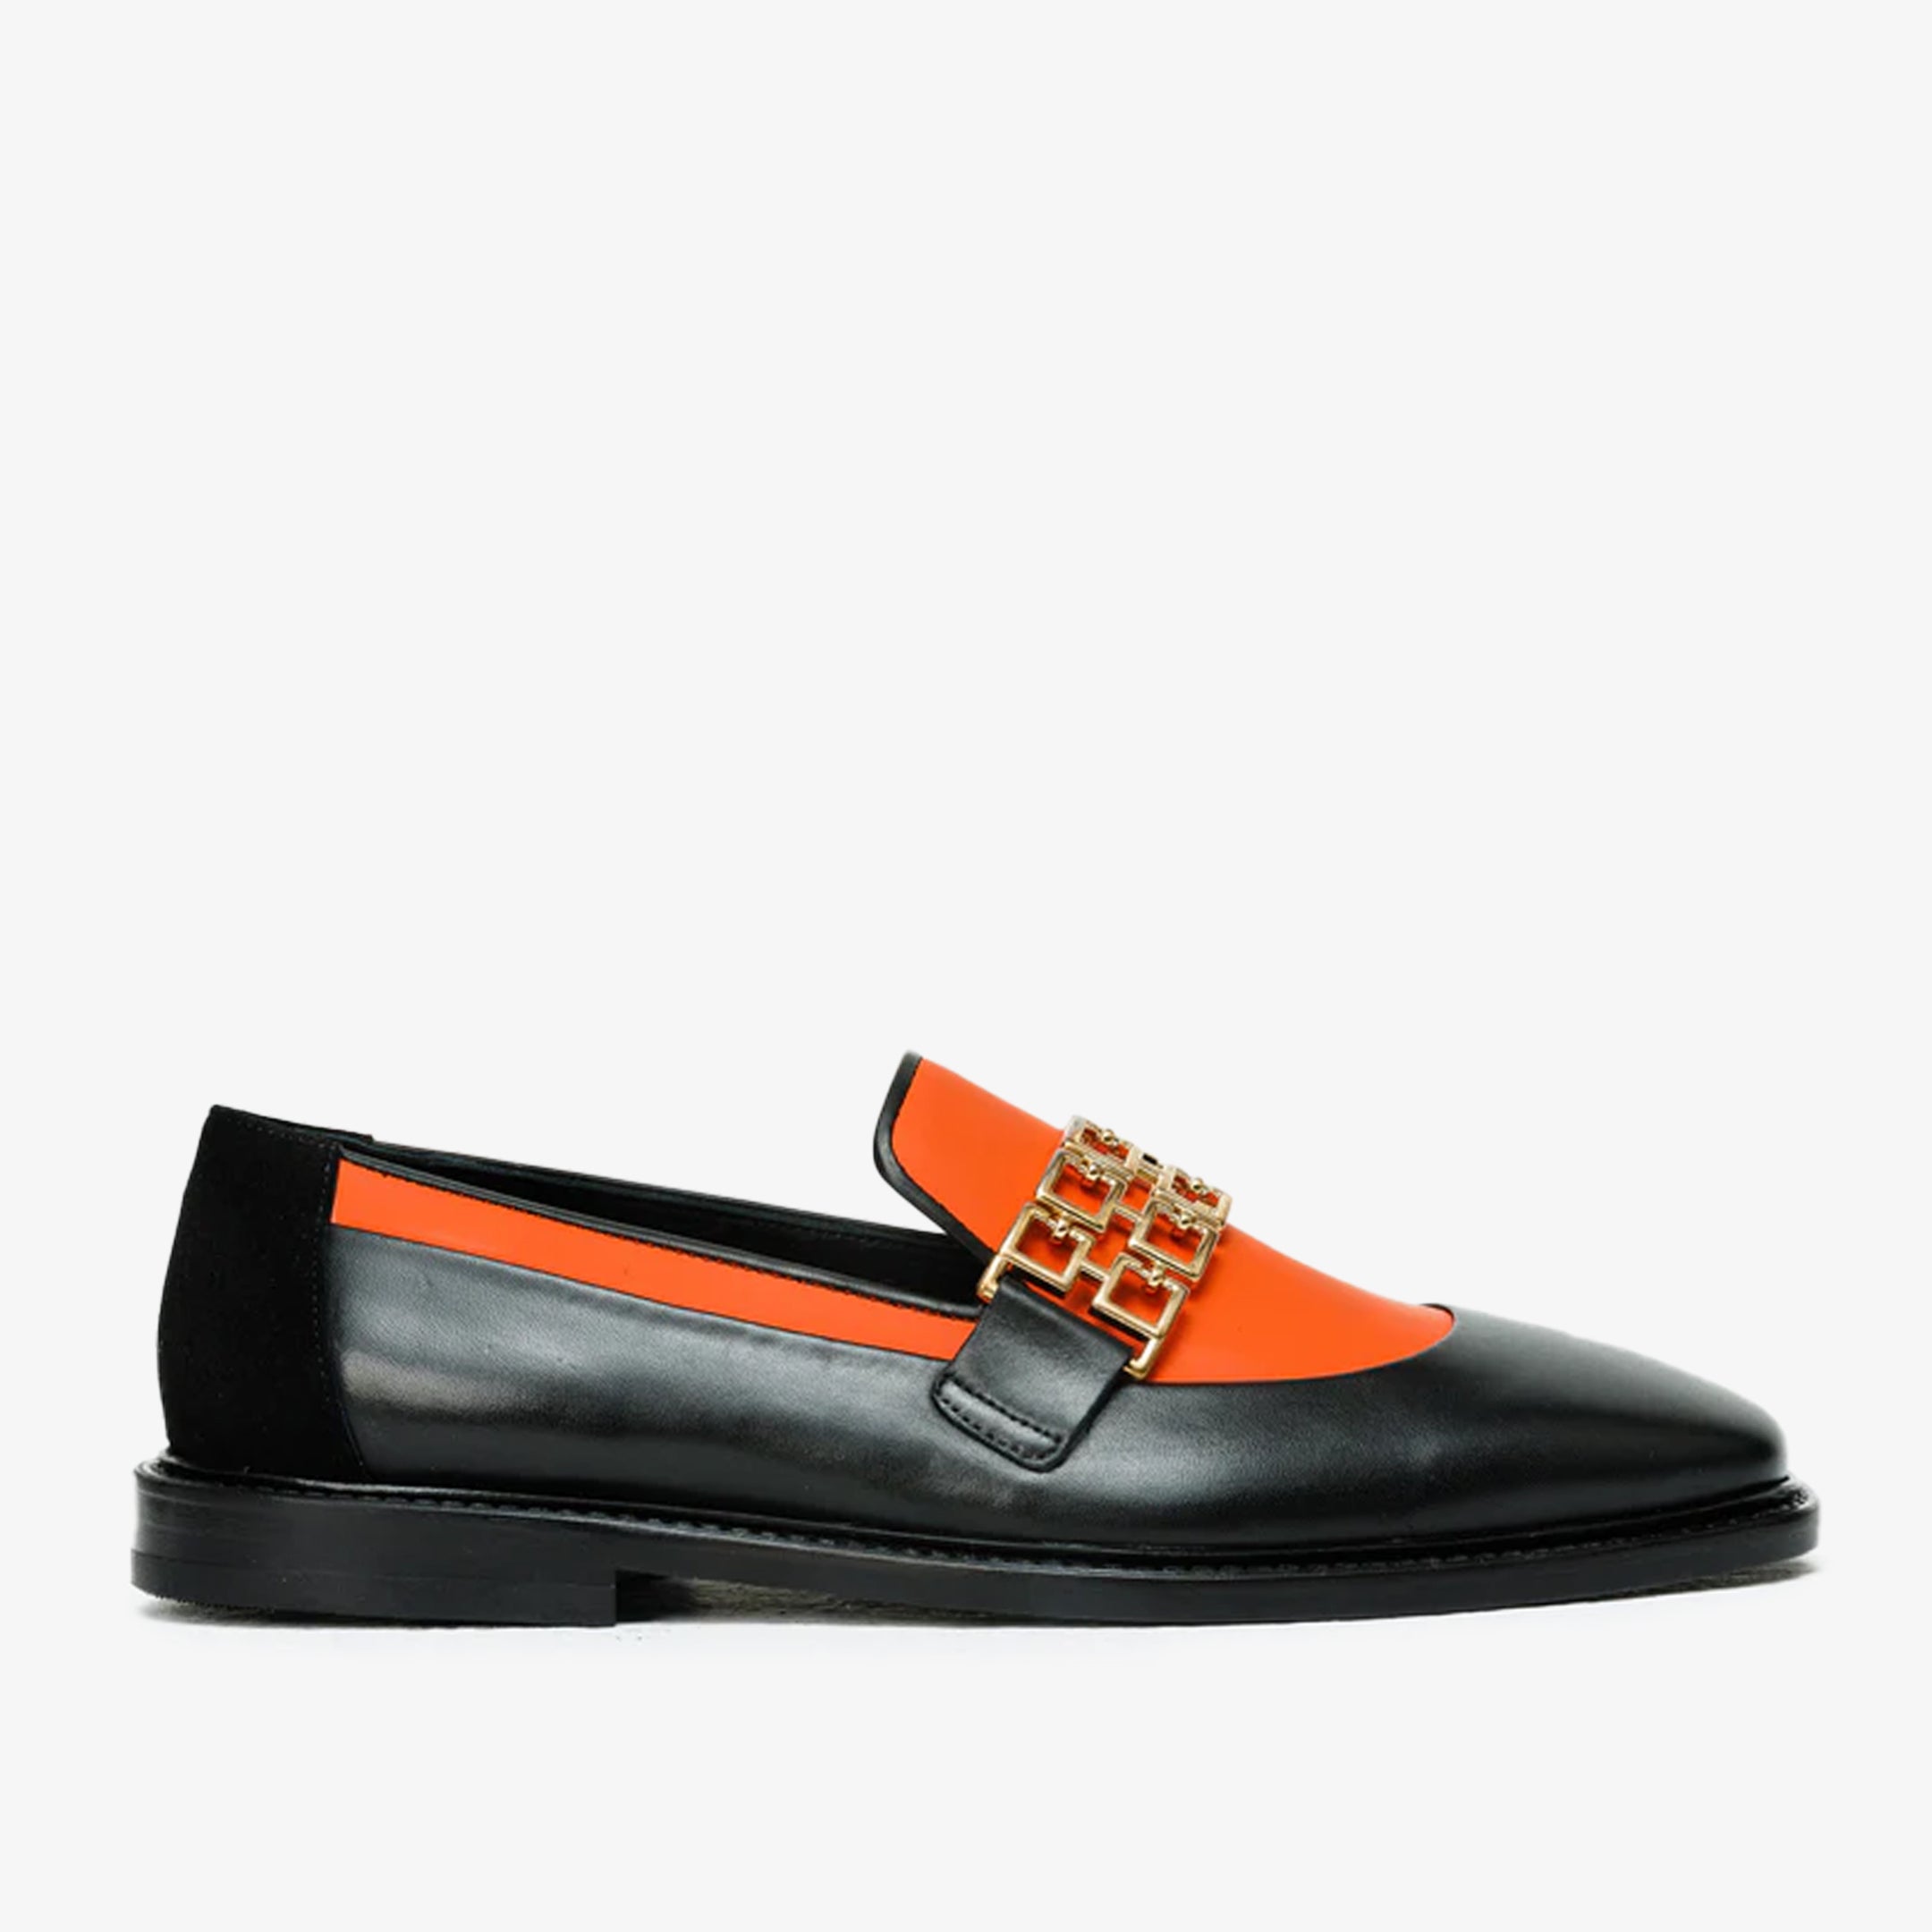 The Gemena Black & Orange Leather Bit Dress Loafer Men Shoe